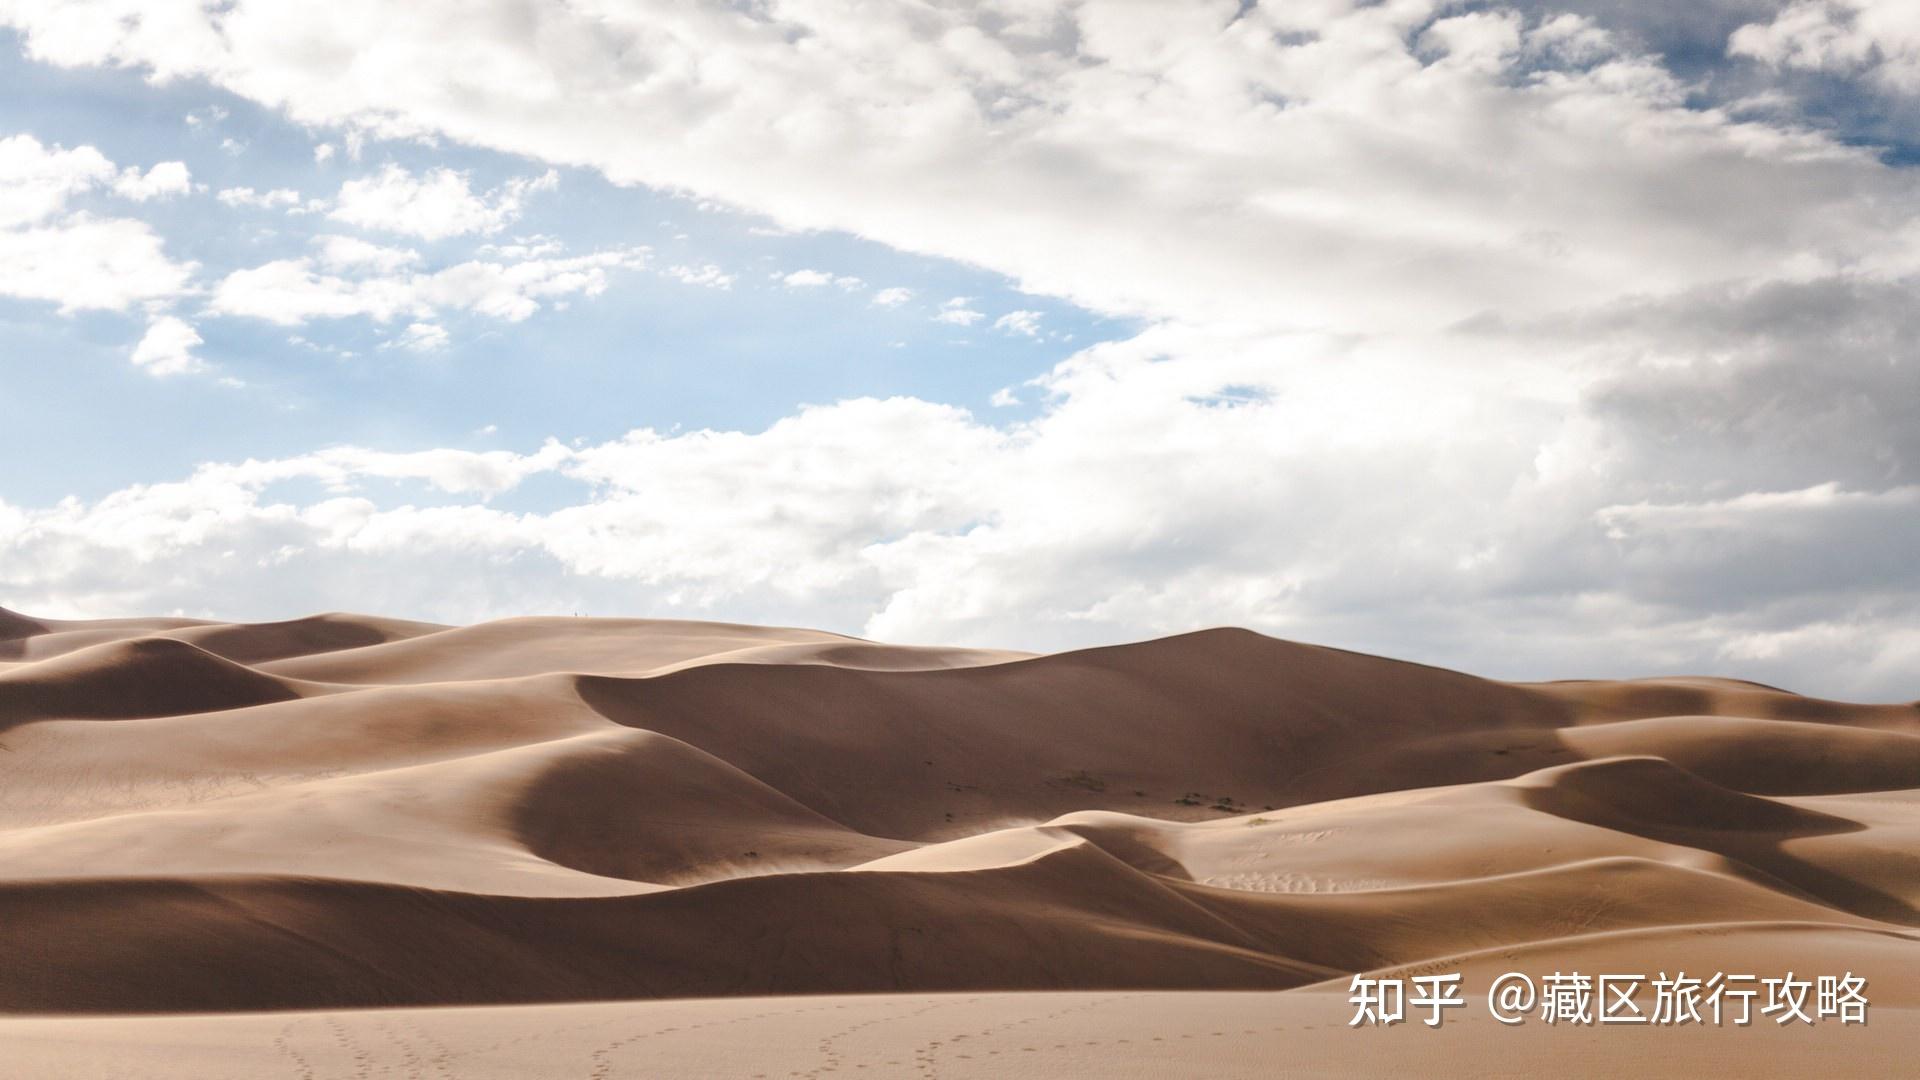 不论是王维笔下的"大漠孤烟直,长河落日圆",还是李贺的"大漠沙如雪